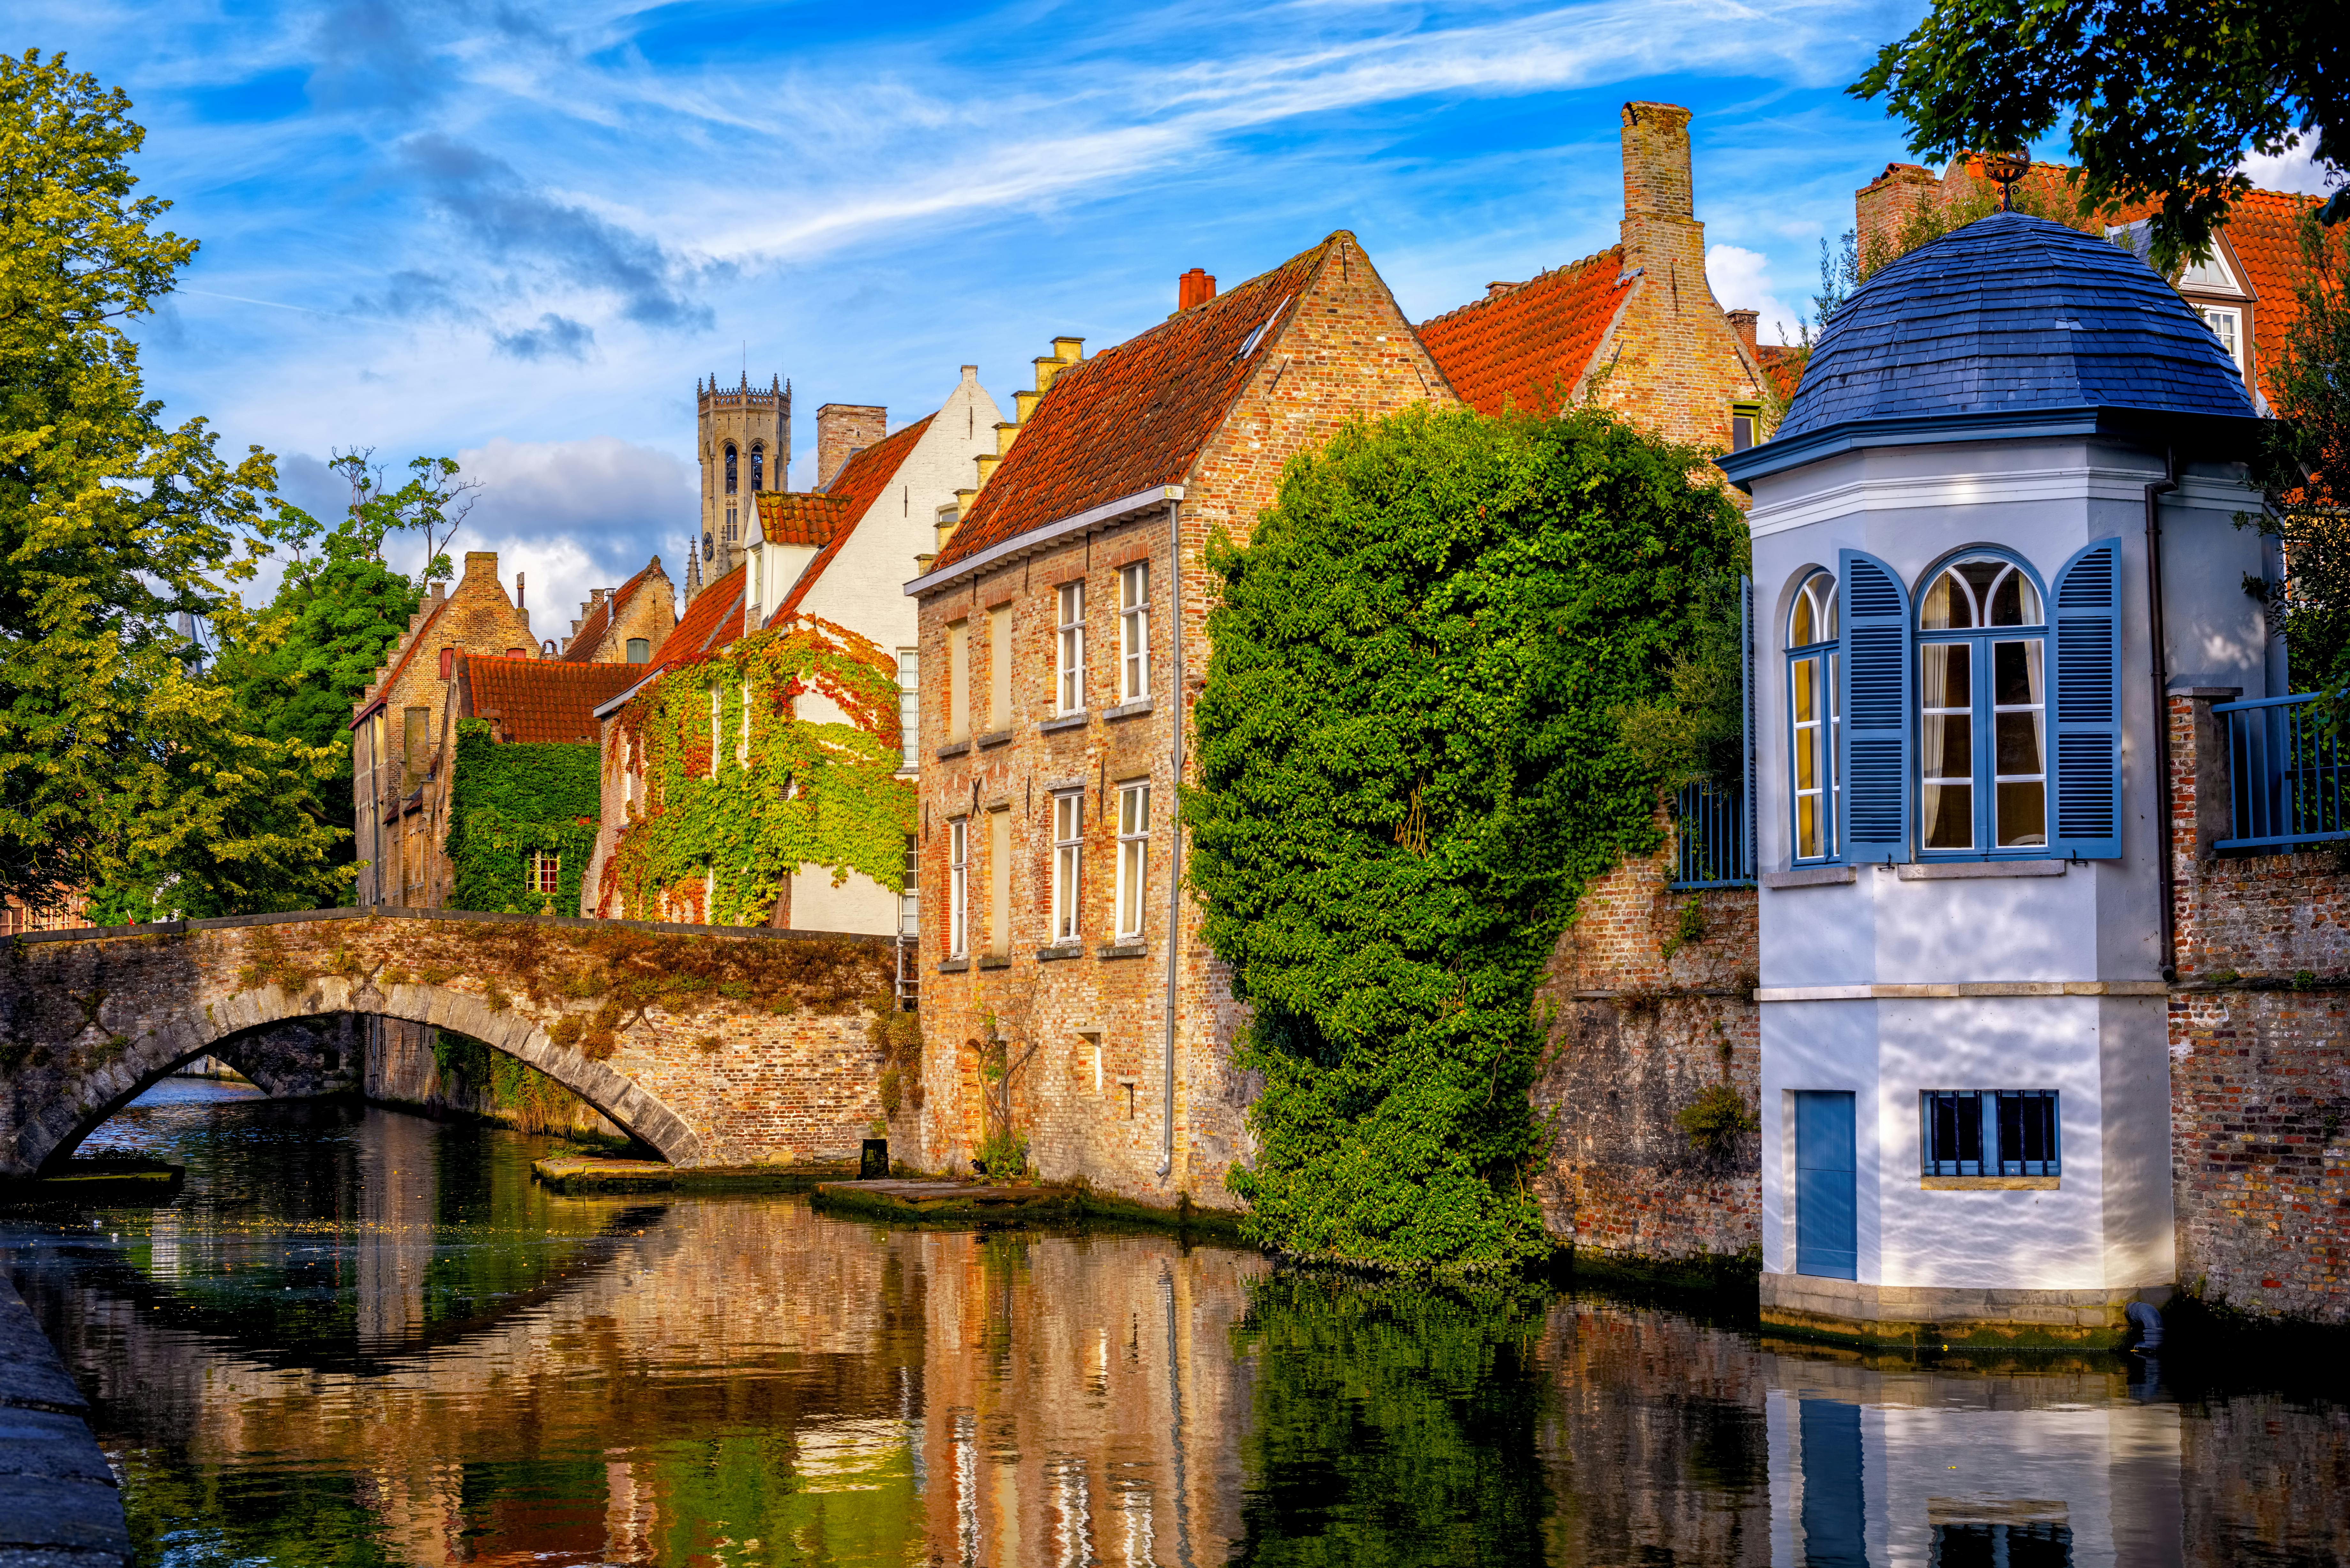 Excursão em grupo pequeno dos melhores de Bruges